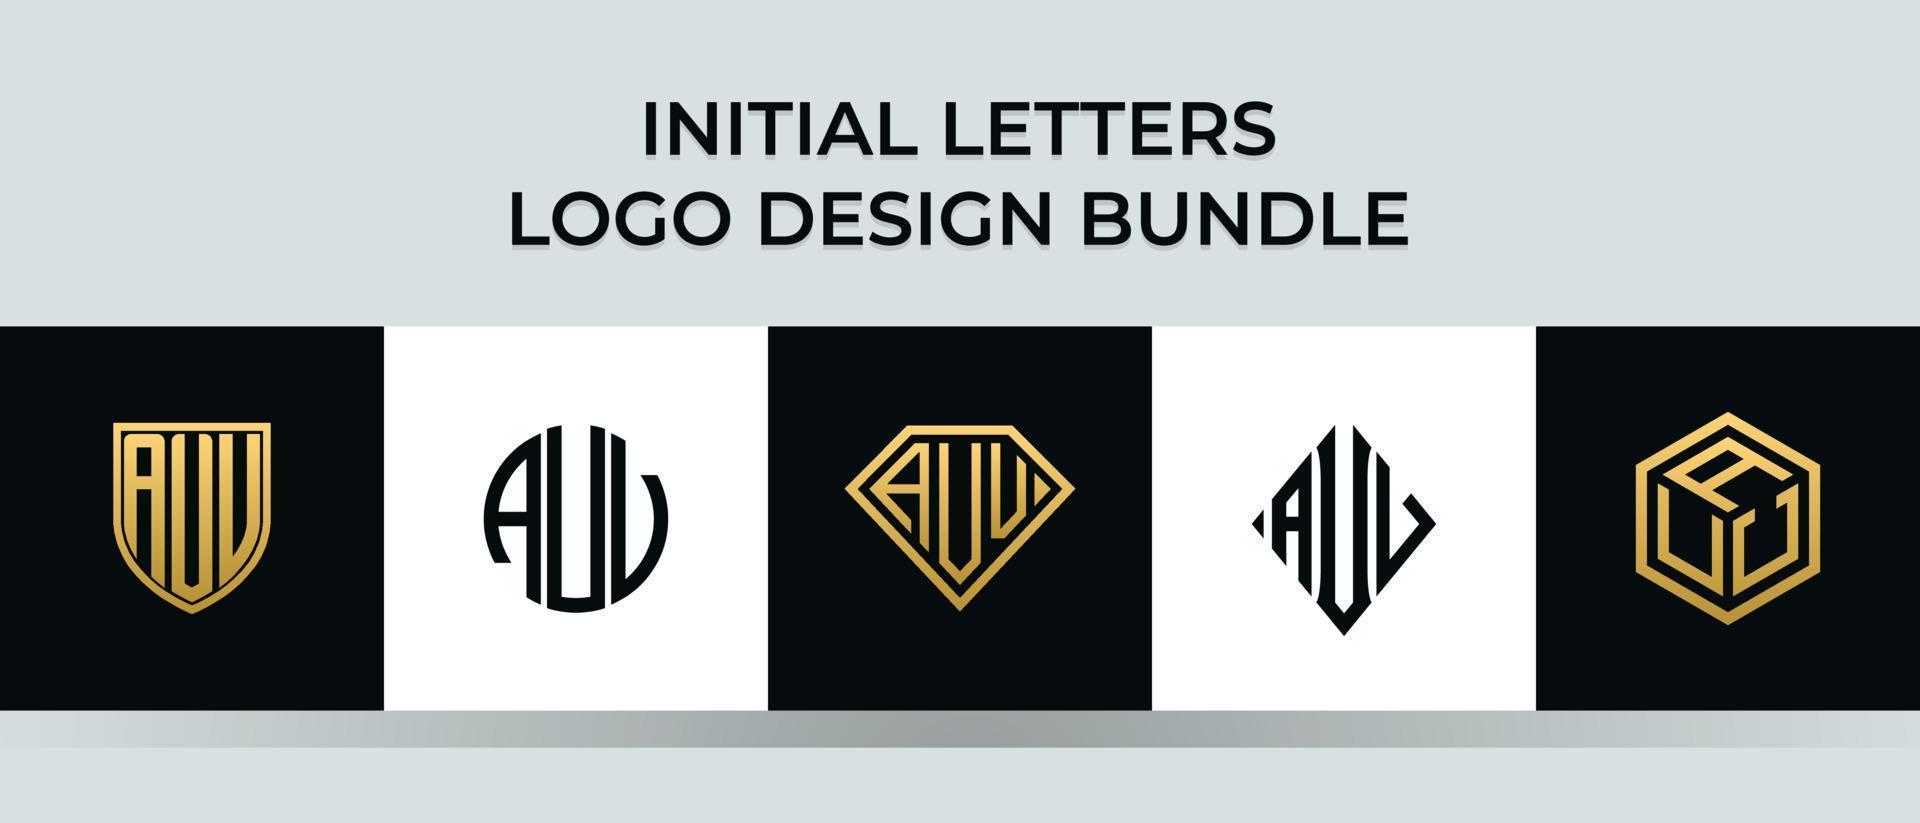 Initial letters AUV logo designs Bundle vector